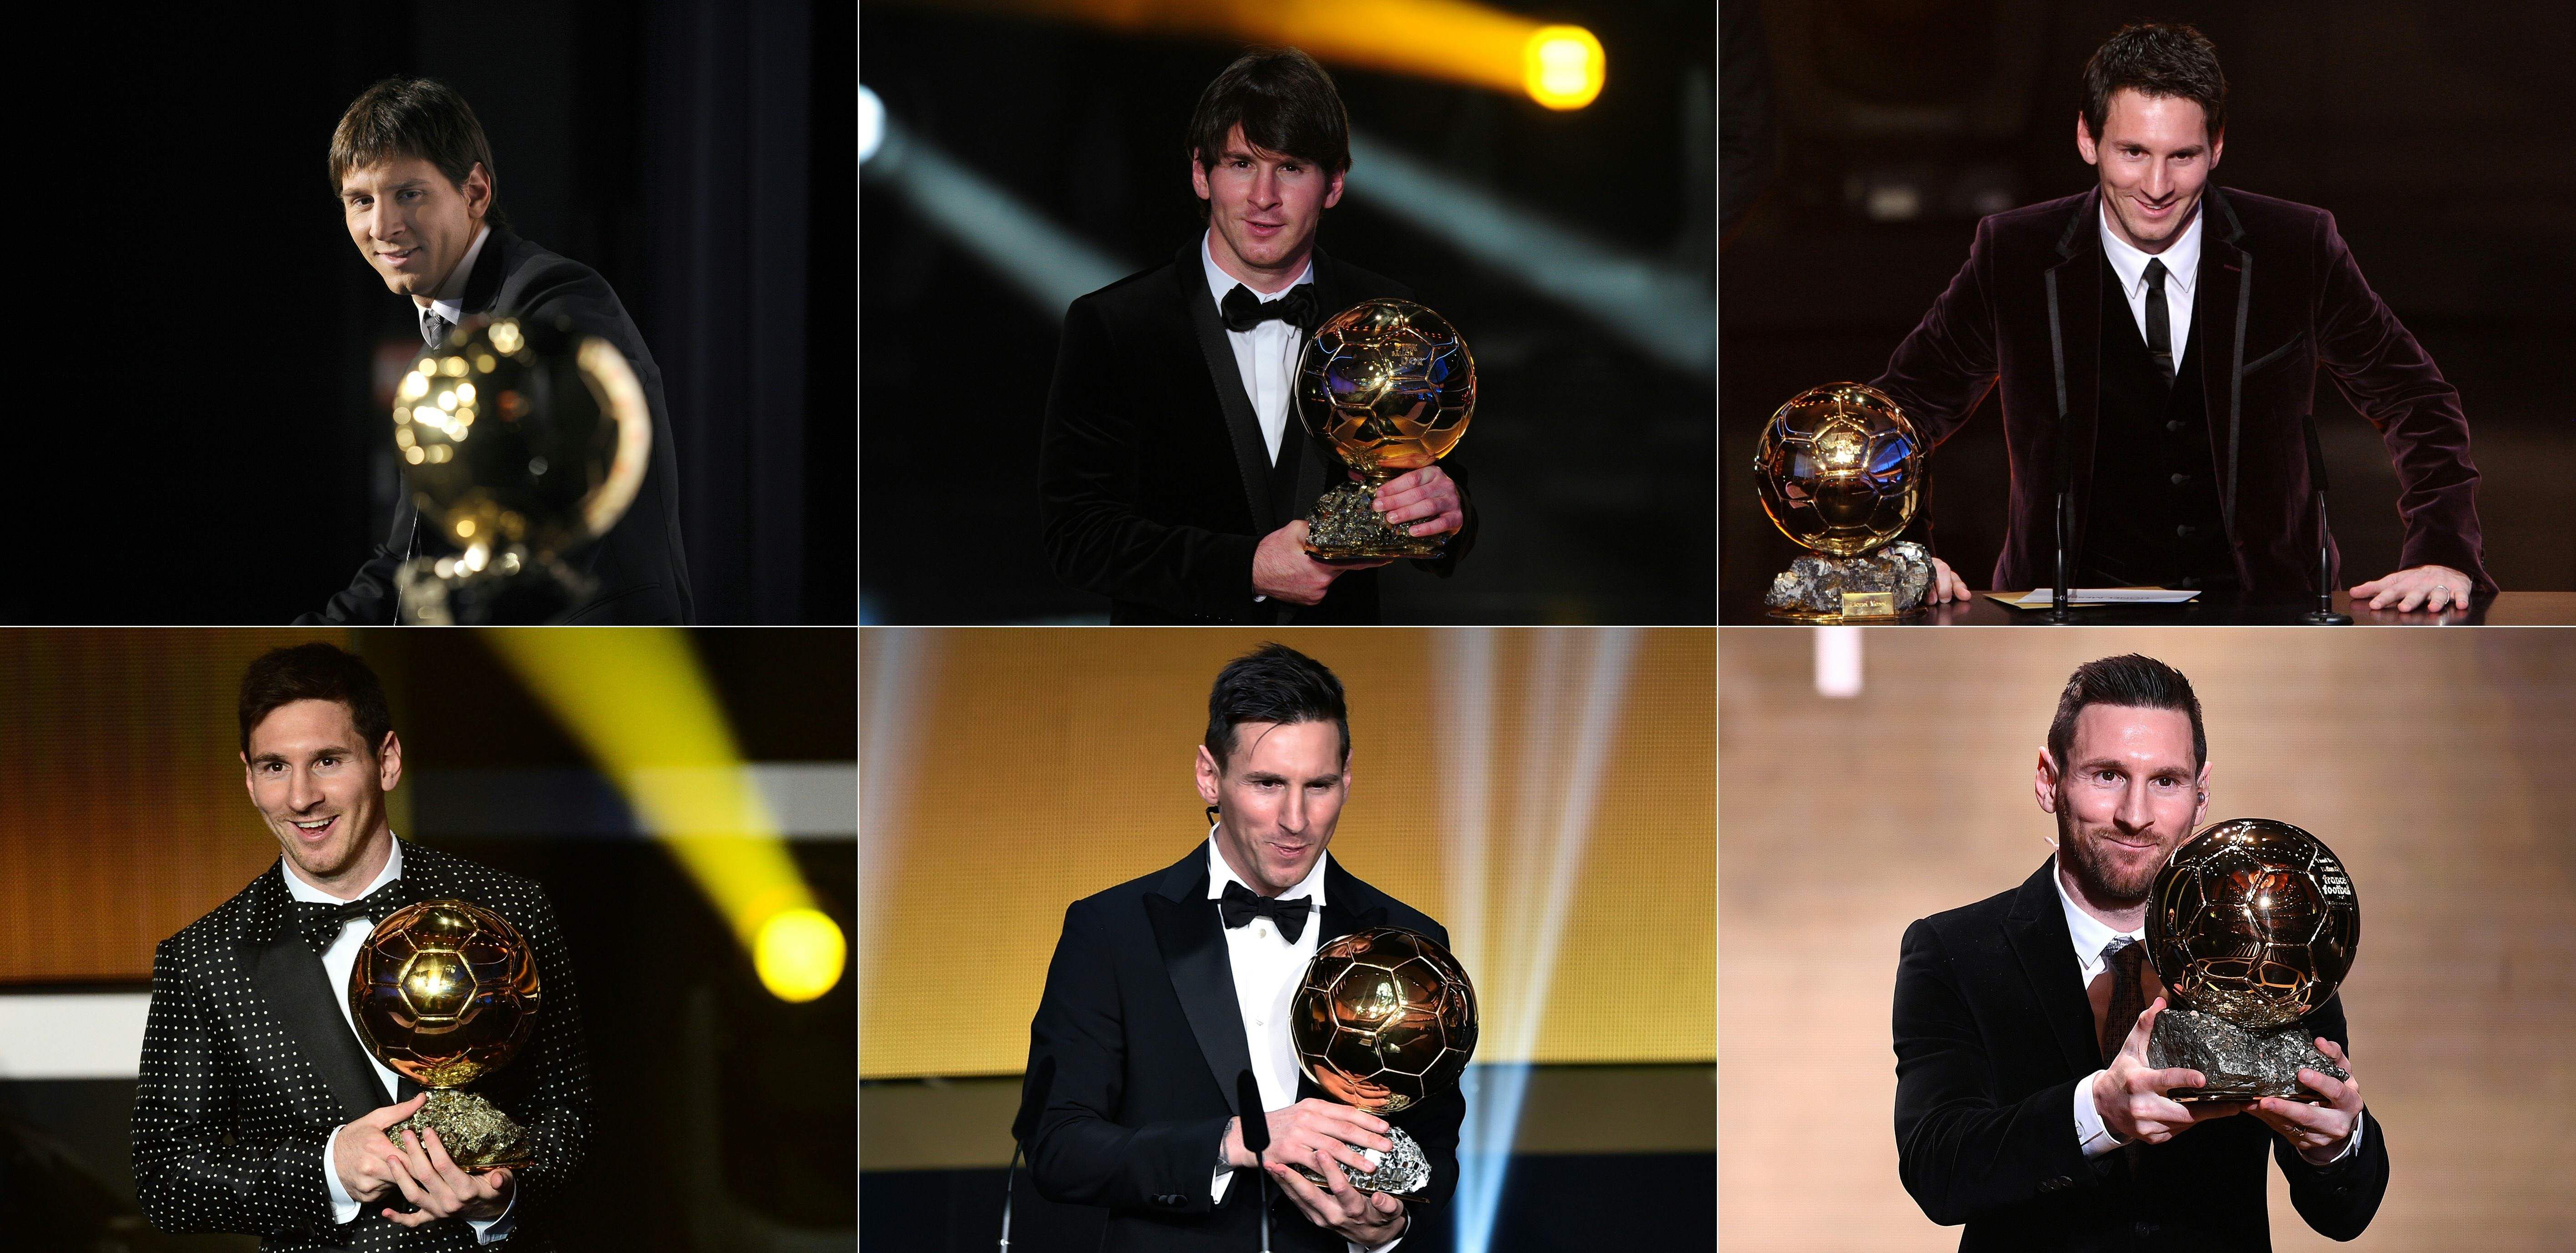 Messi, Ronaldo, Maradona and pele goals at the age of 31.